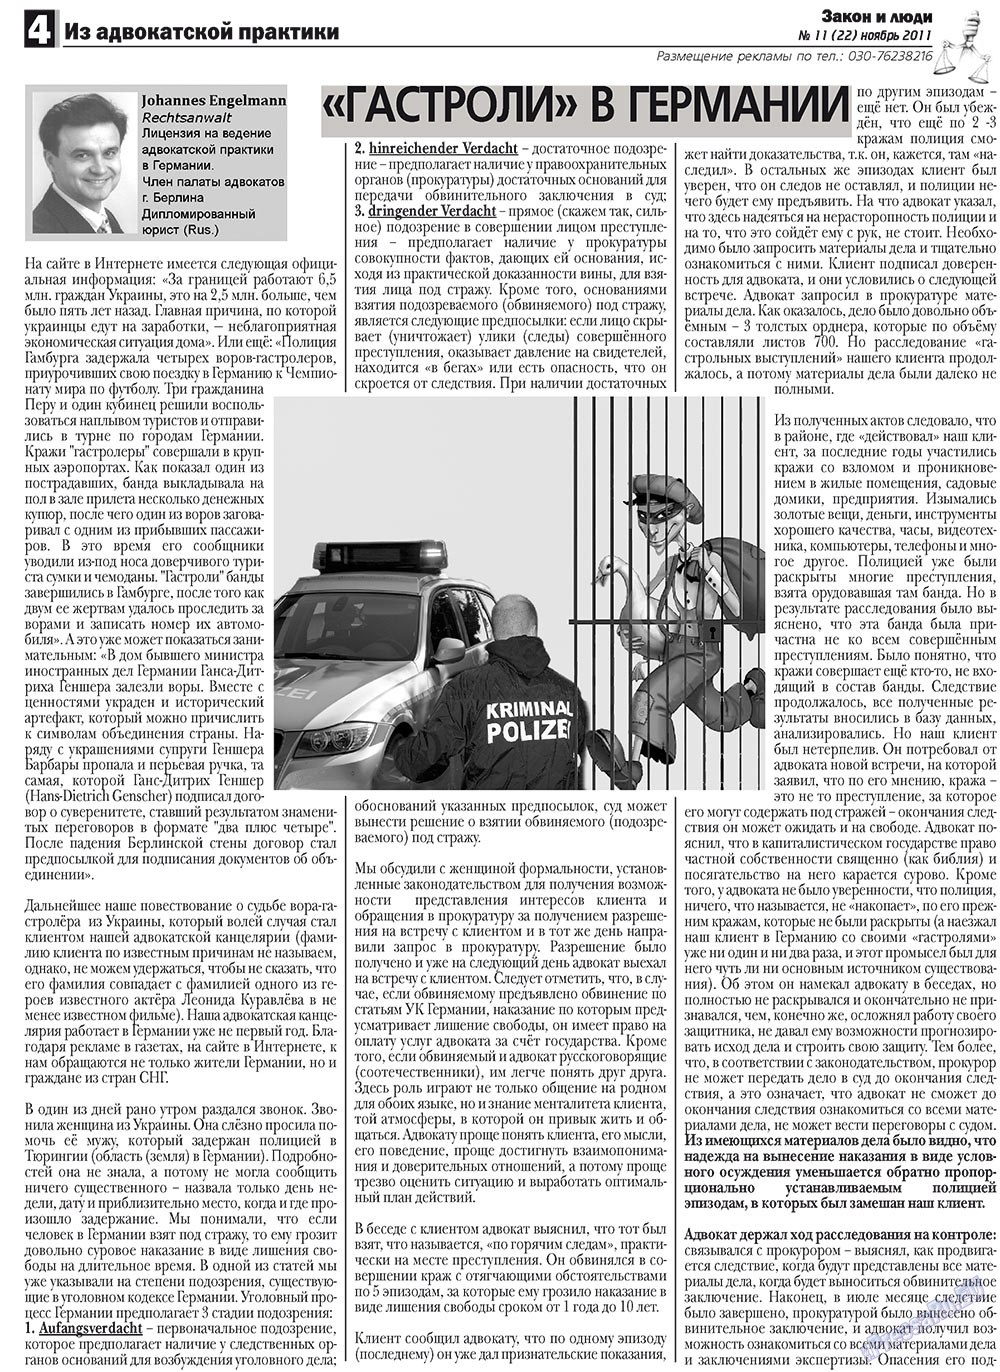 Закон и люди, газета. 2011 №11 стр.4